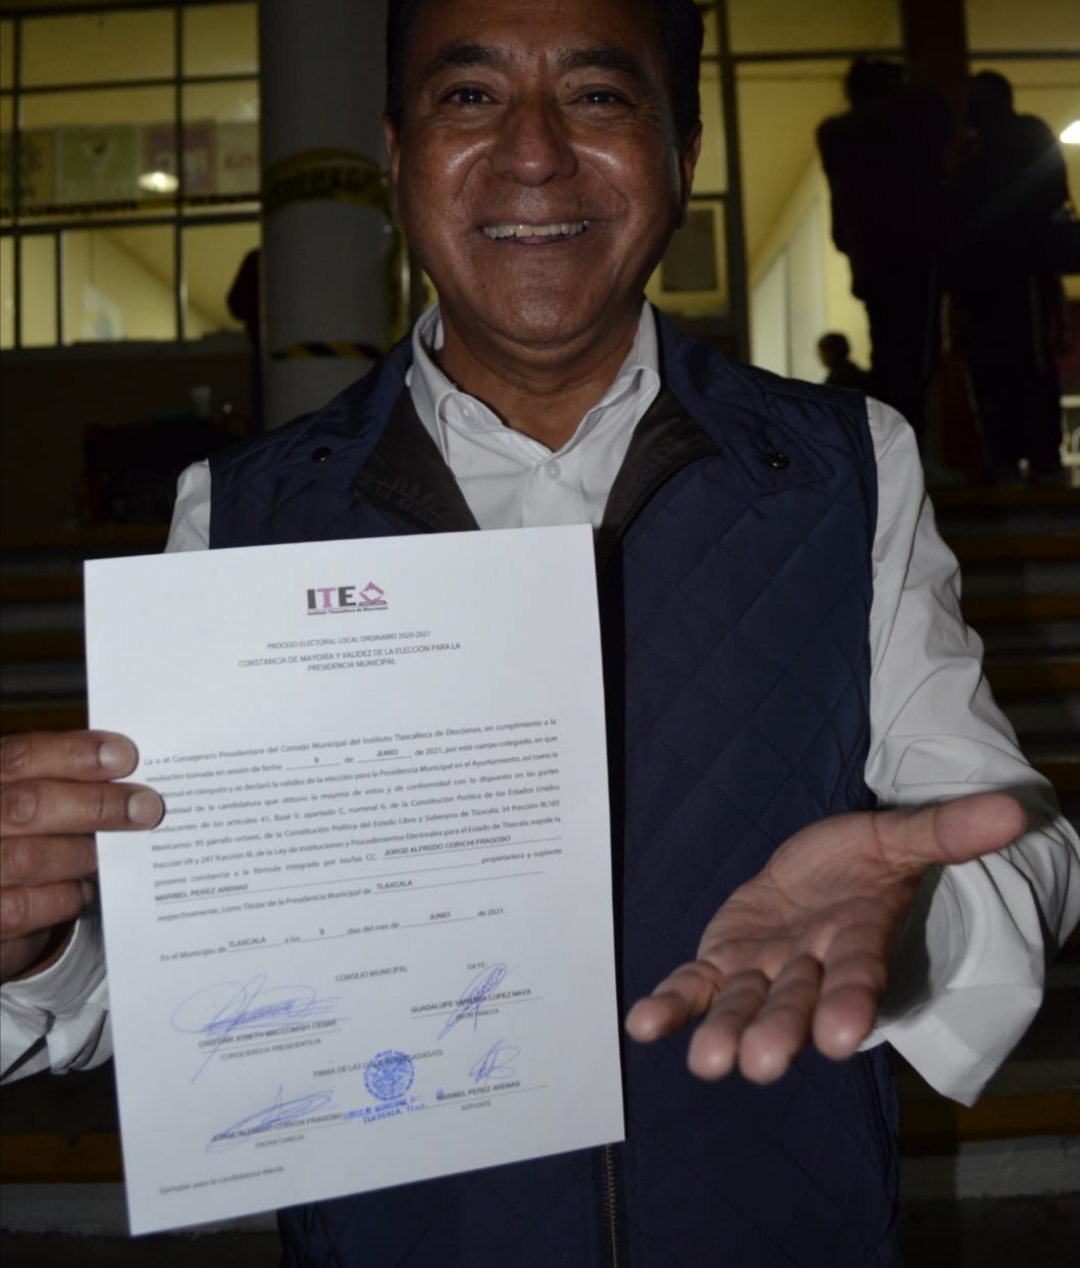 Confirma ITE resultado de la elección a favor de Morena en municipio de Tlaxcala: